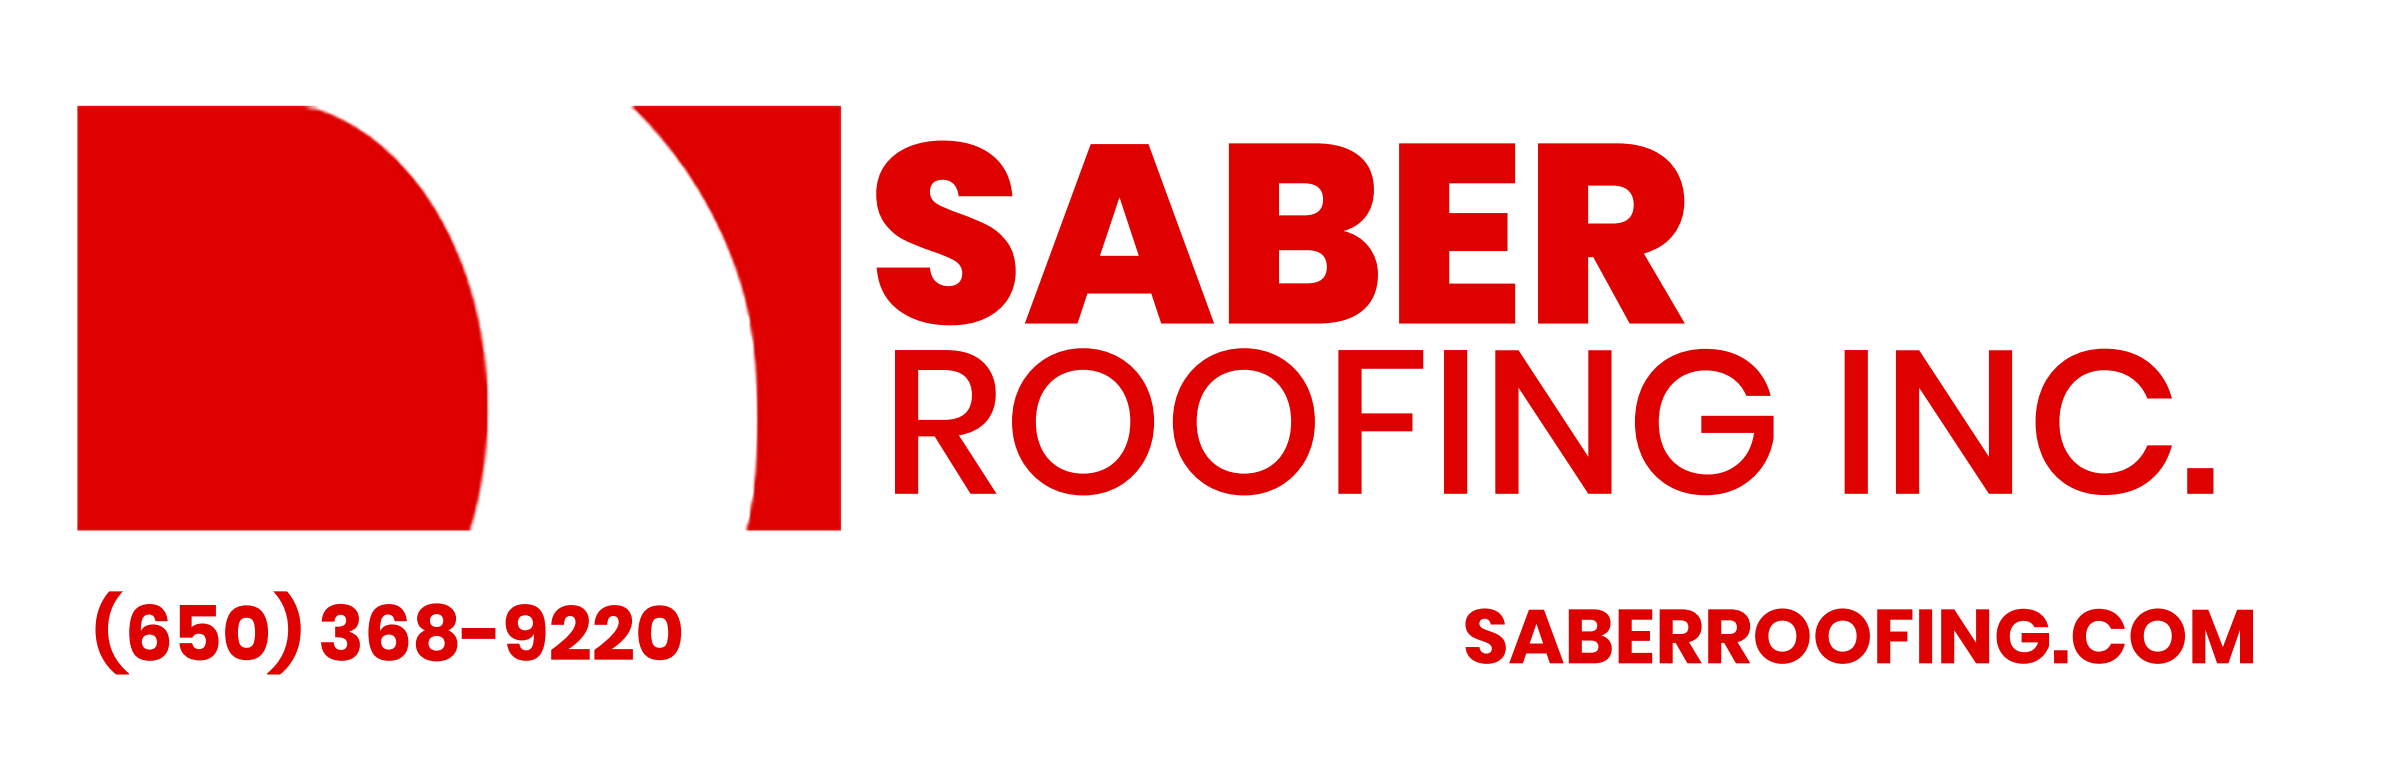 Saber Roofing, Inc.